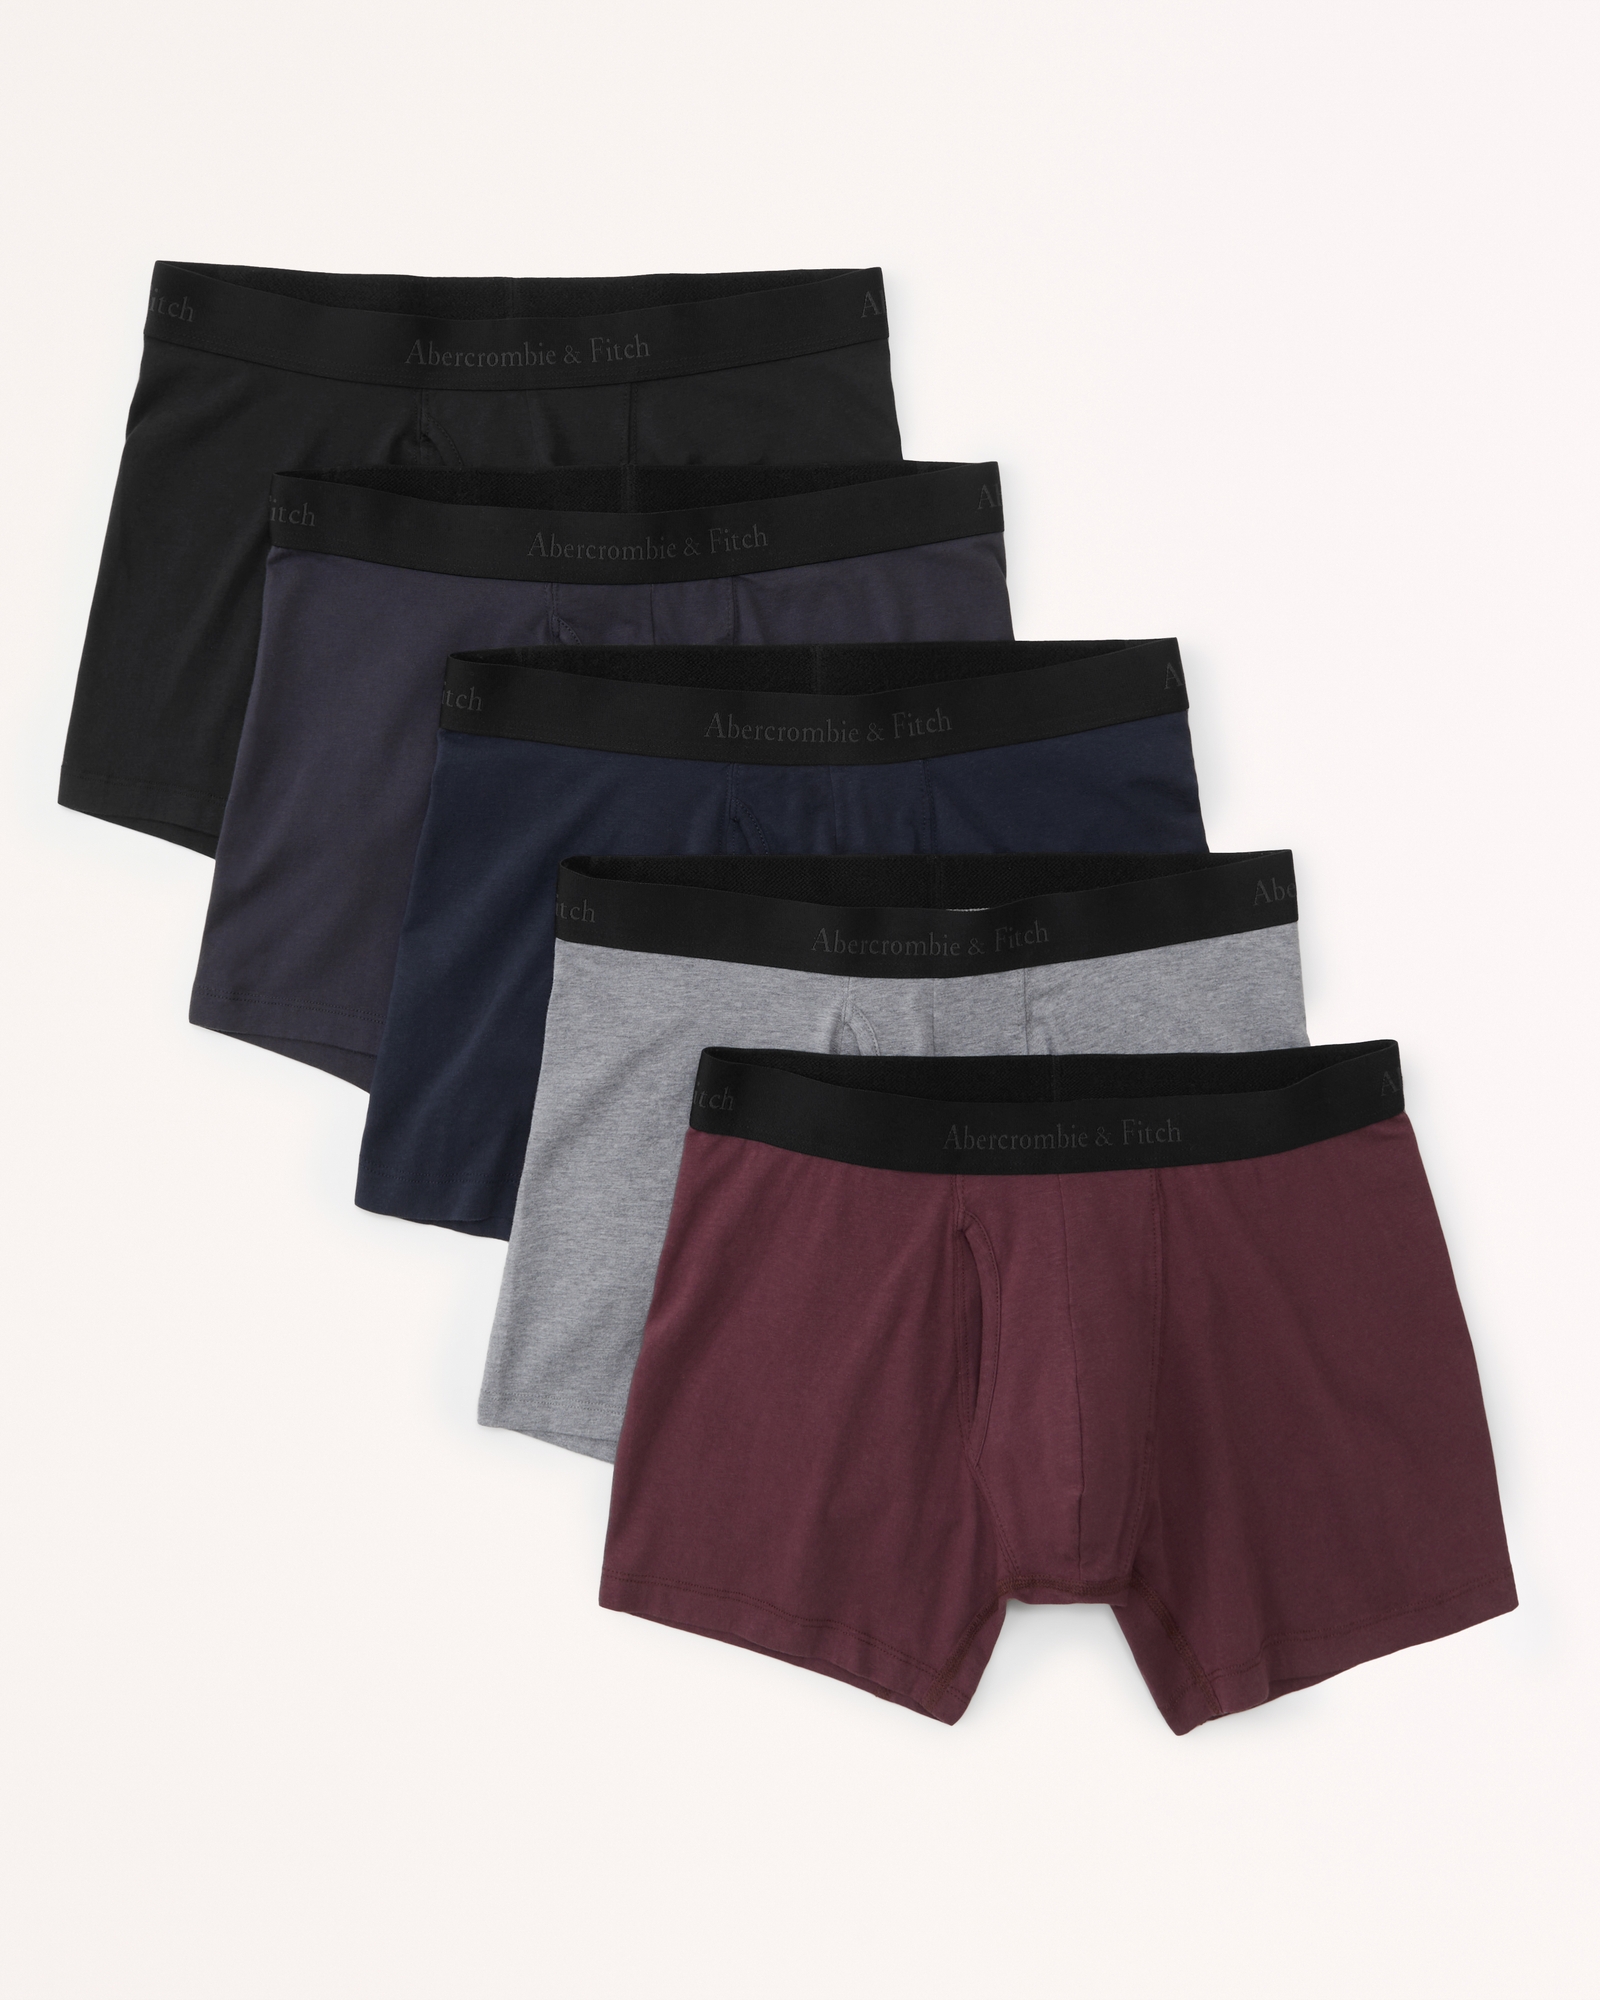 Men's 5-Pack Boxer Briefs | Men's Underwear | Abercrombie.com